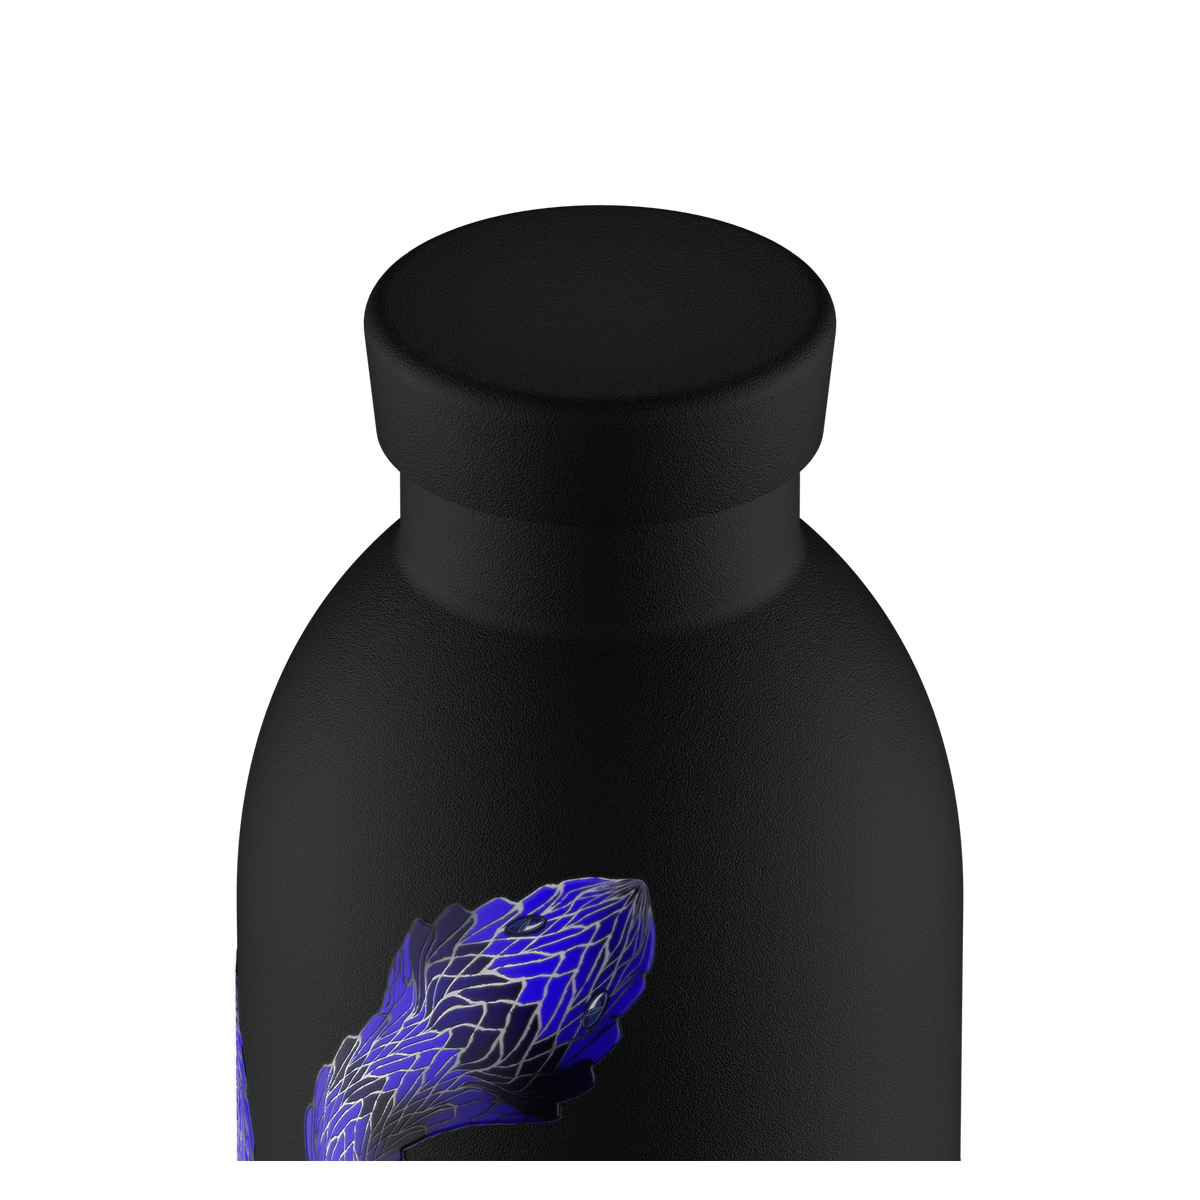 INTER x 24Bottles Black 500 ml, Clima Bottle